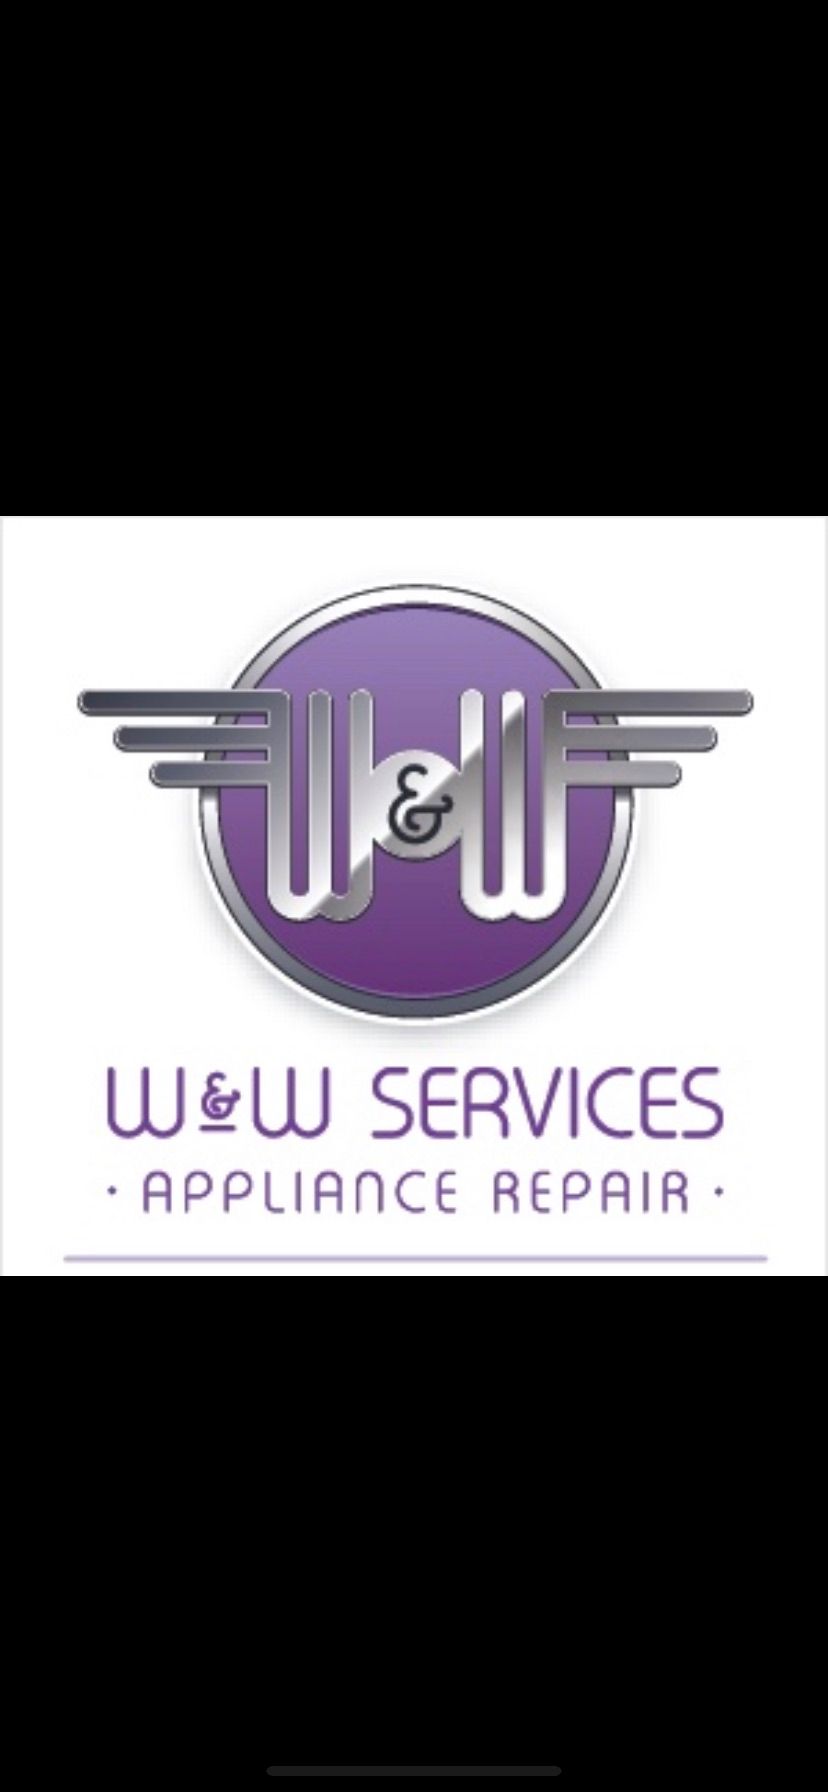 W&W Services